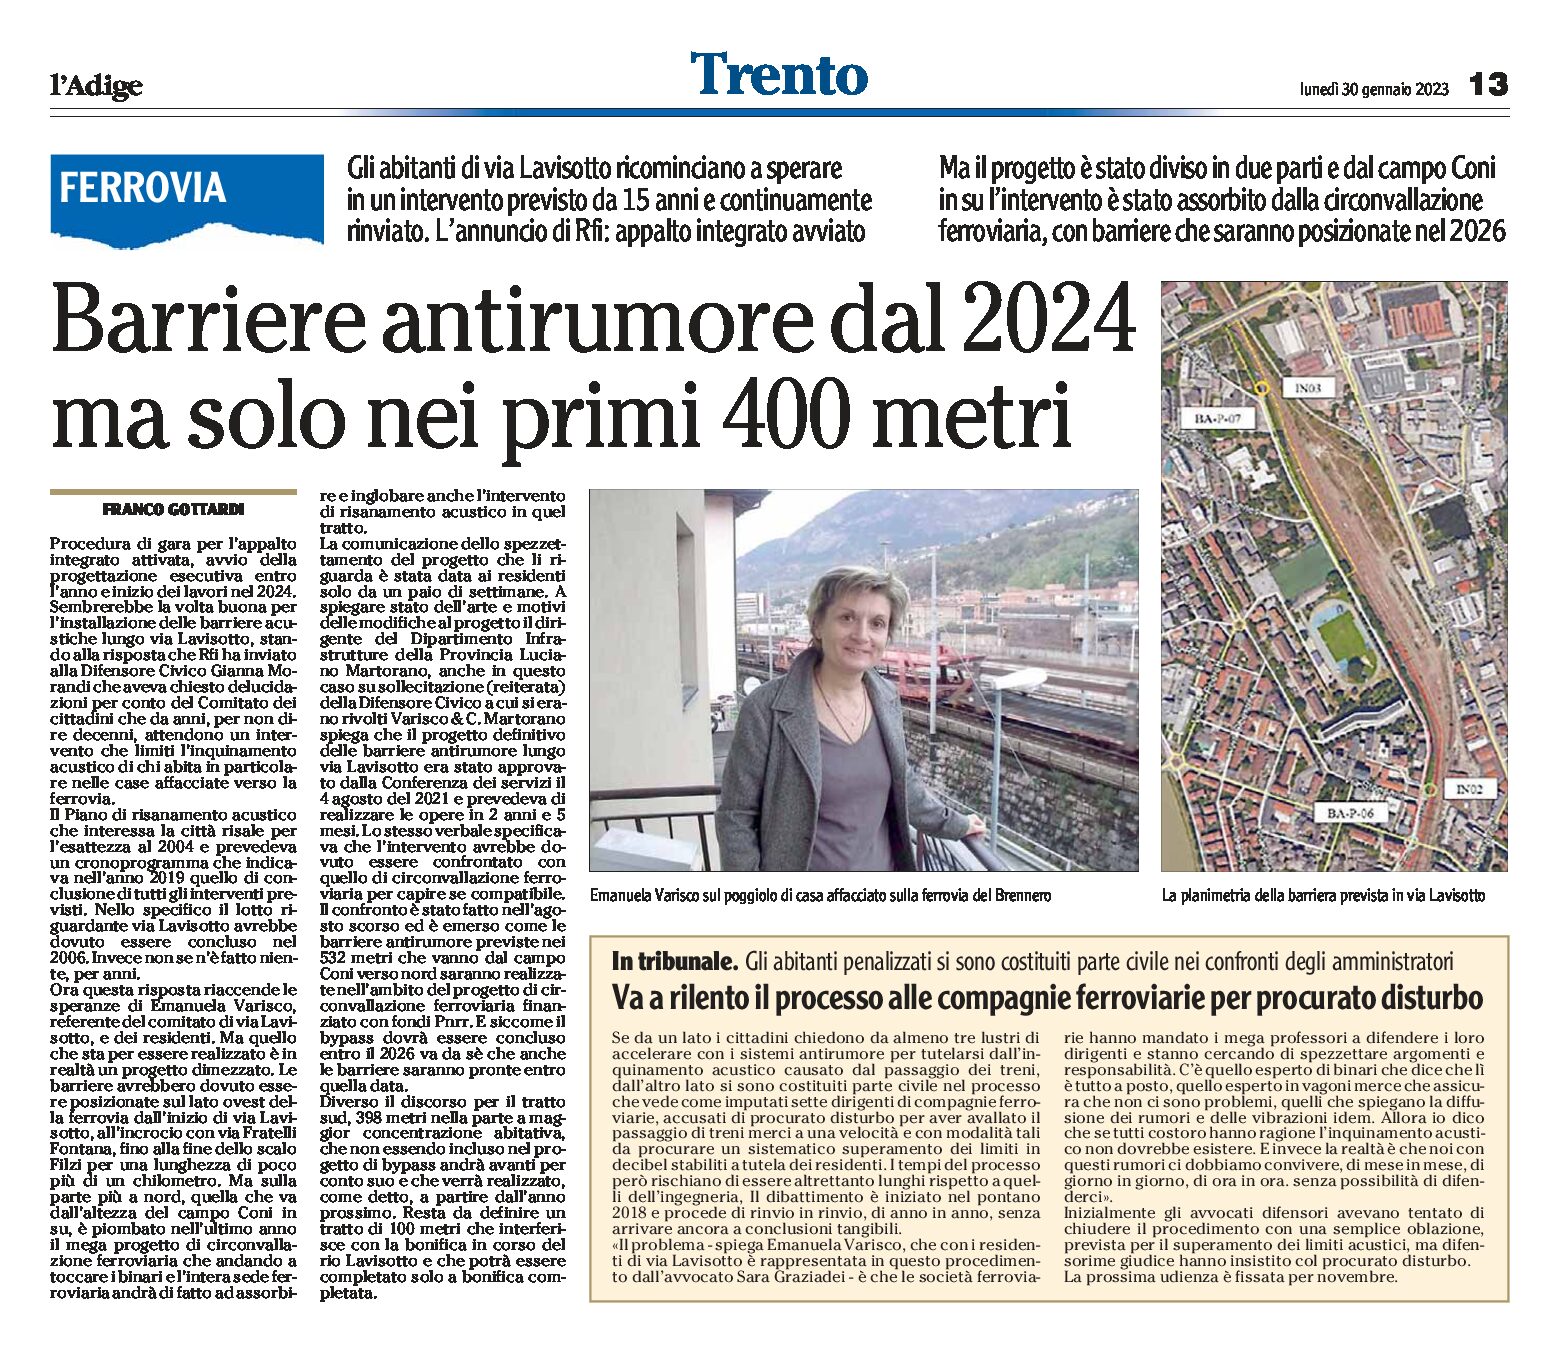 Trento, ferrovia: barriere antirumore dal 2024 ma solo nei primi 400 metri